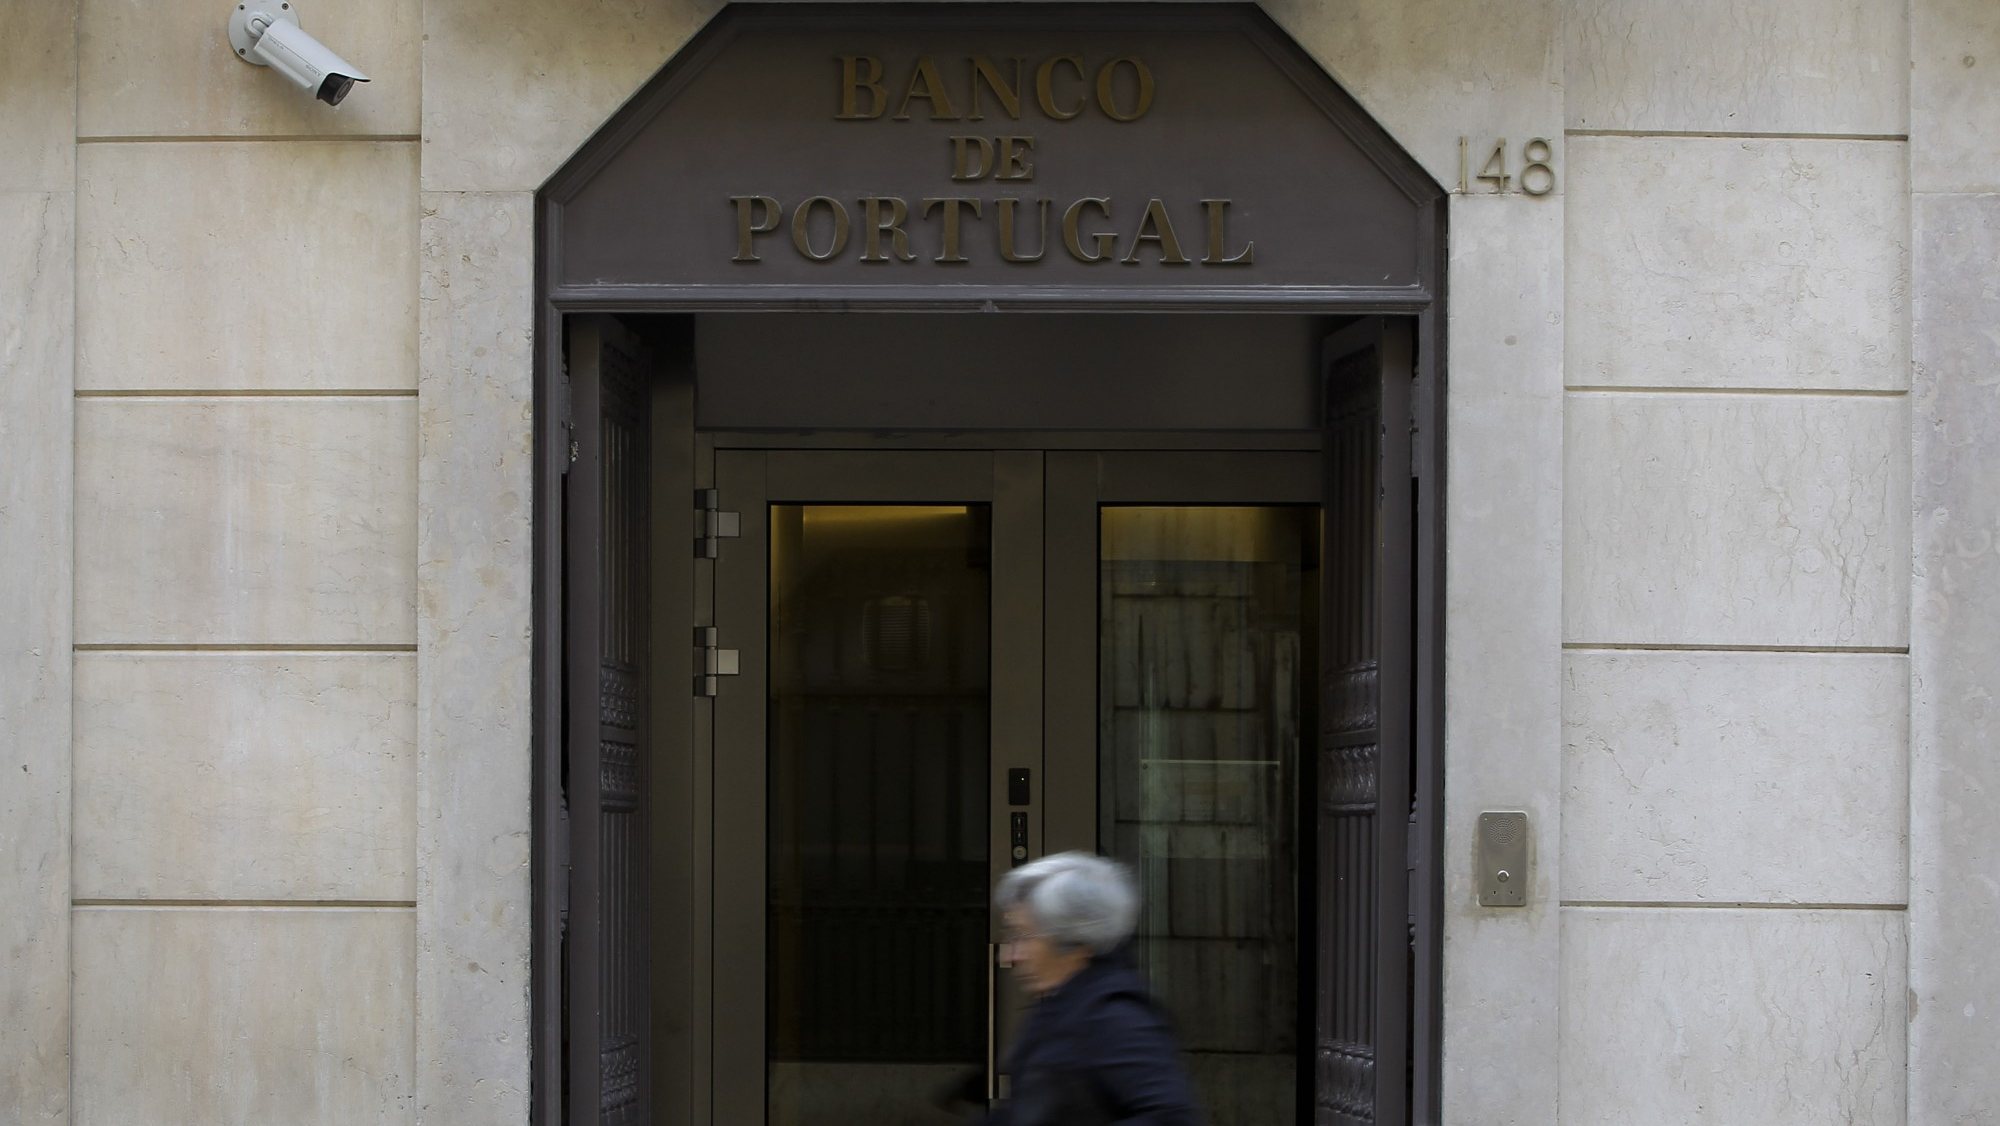 A administradora do Banco de Portugal, , concretamente na locação financeira de automóveis novos, referiu, a Euribor a 12 meses já ultrapassou a taxa máxima de referência no primeiro trimestre de 2023